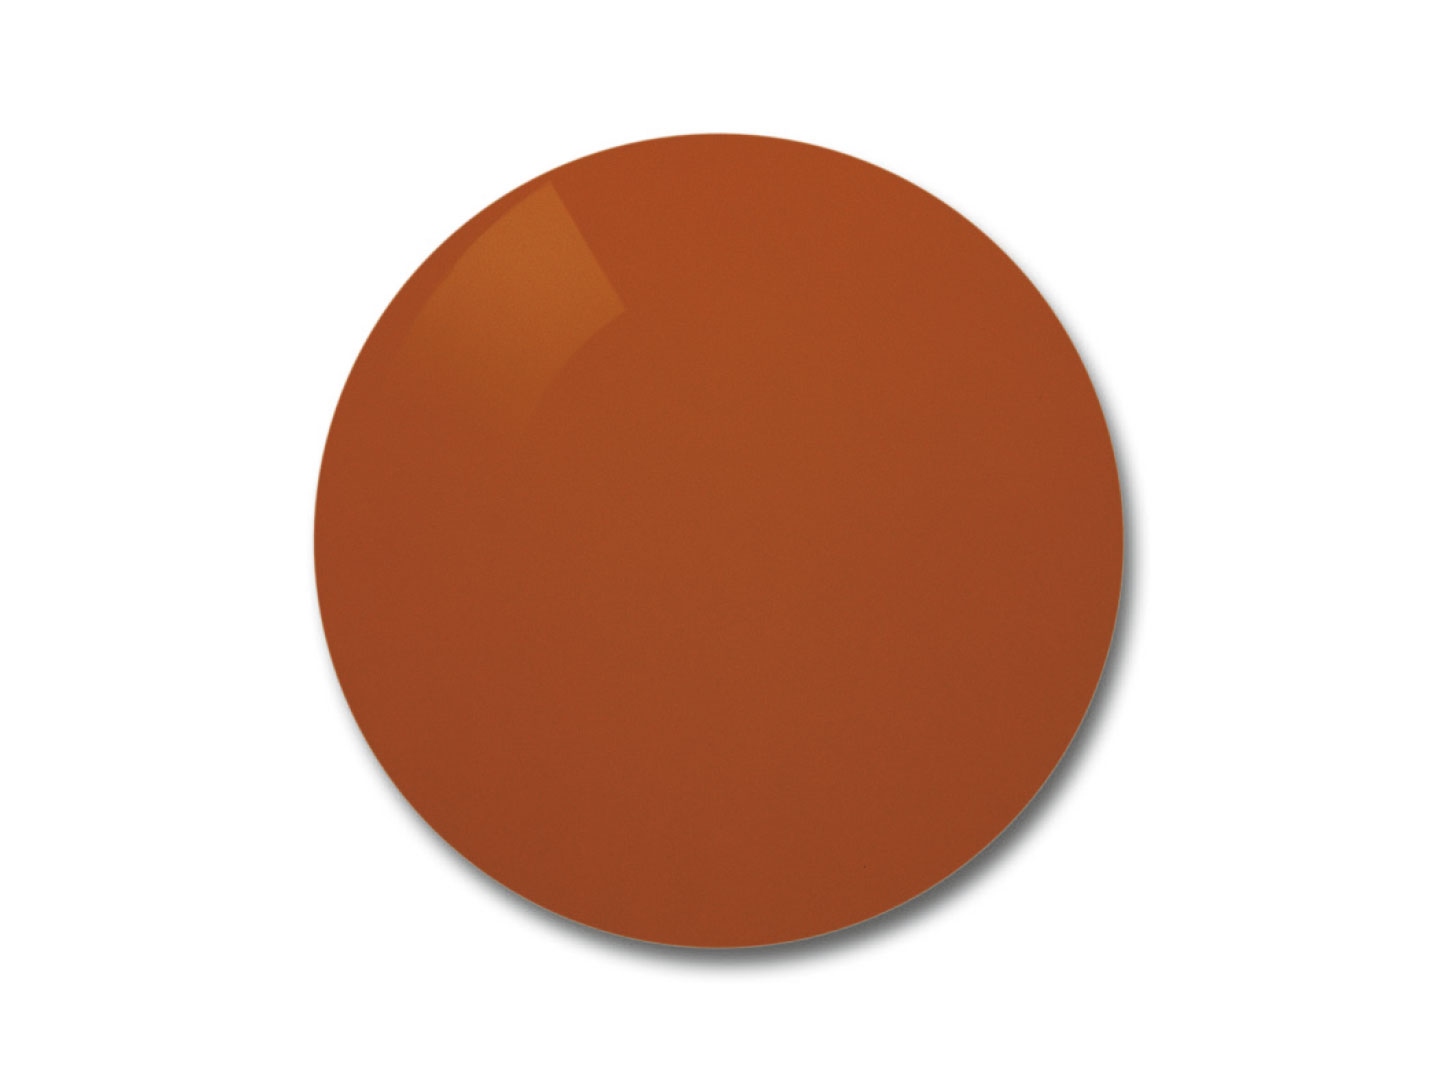 Abbildung eines ZEISS Skylet fun Sonnenbrillenglases mit orangefarbener Tönung